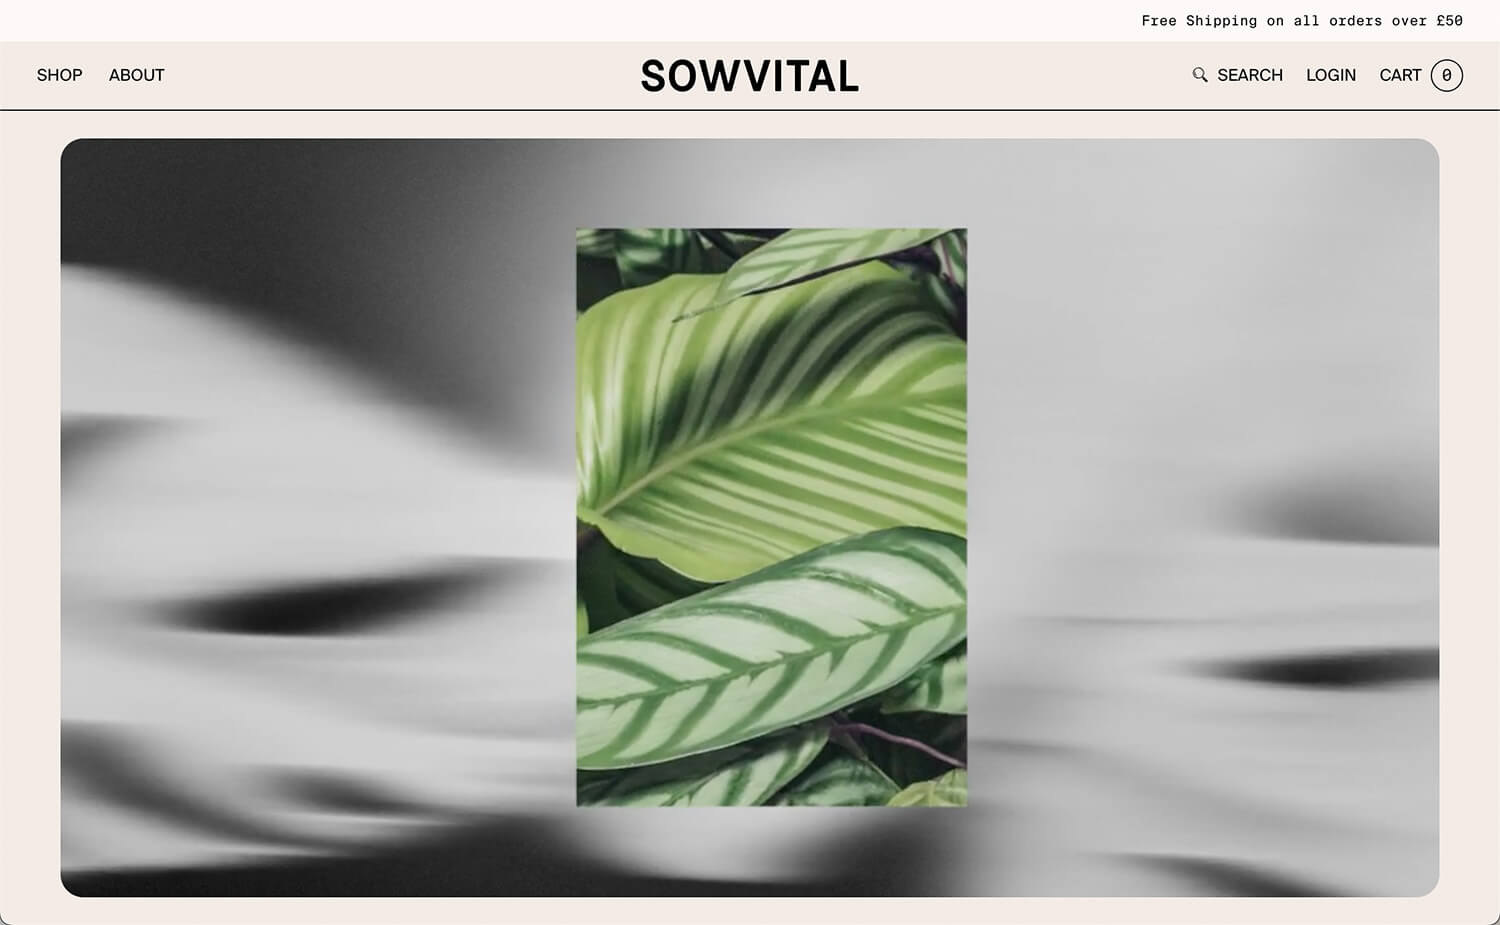 Shopify Website Design Inspiration - Sowvital